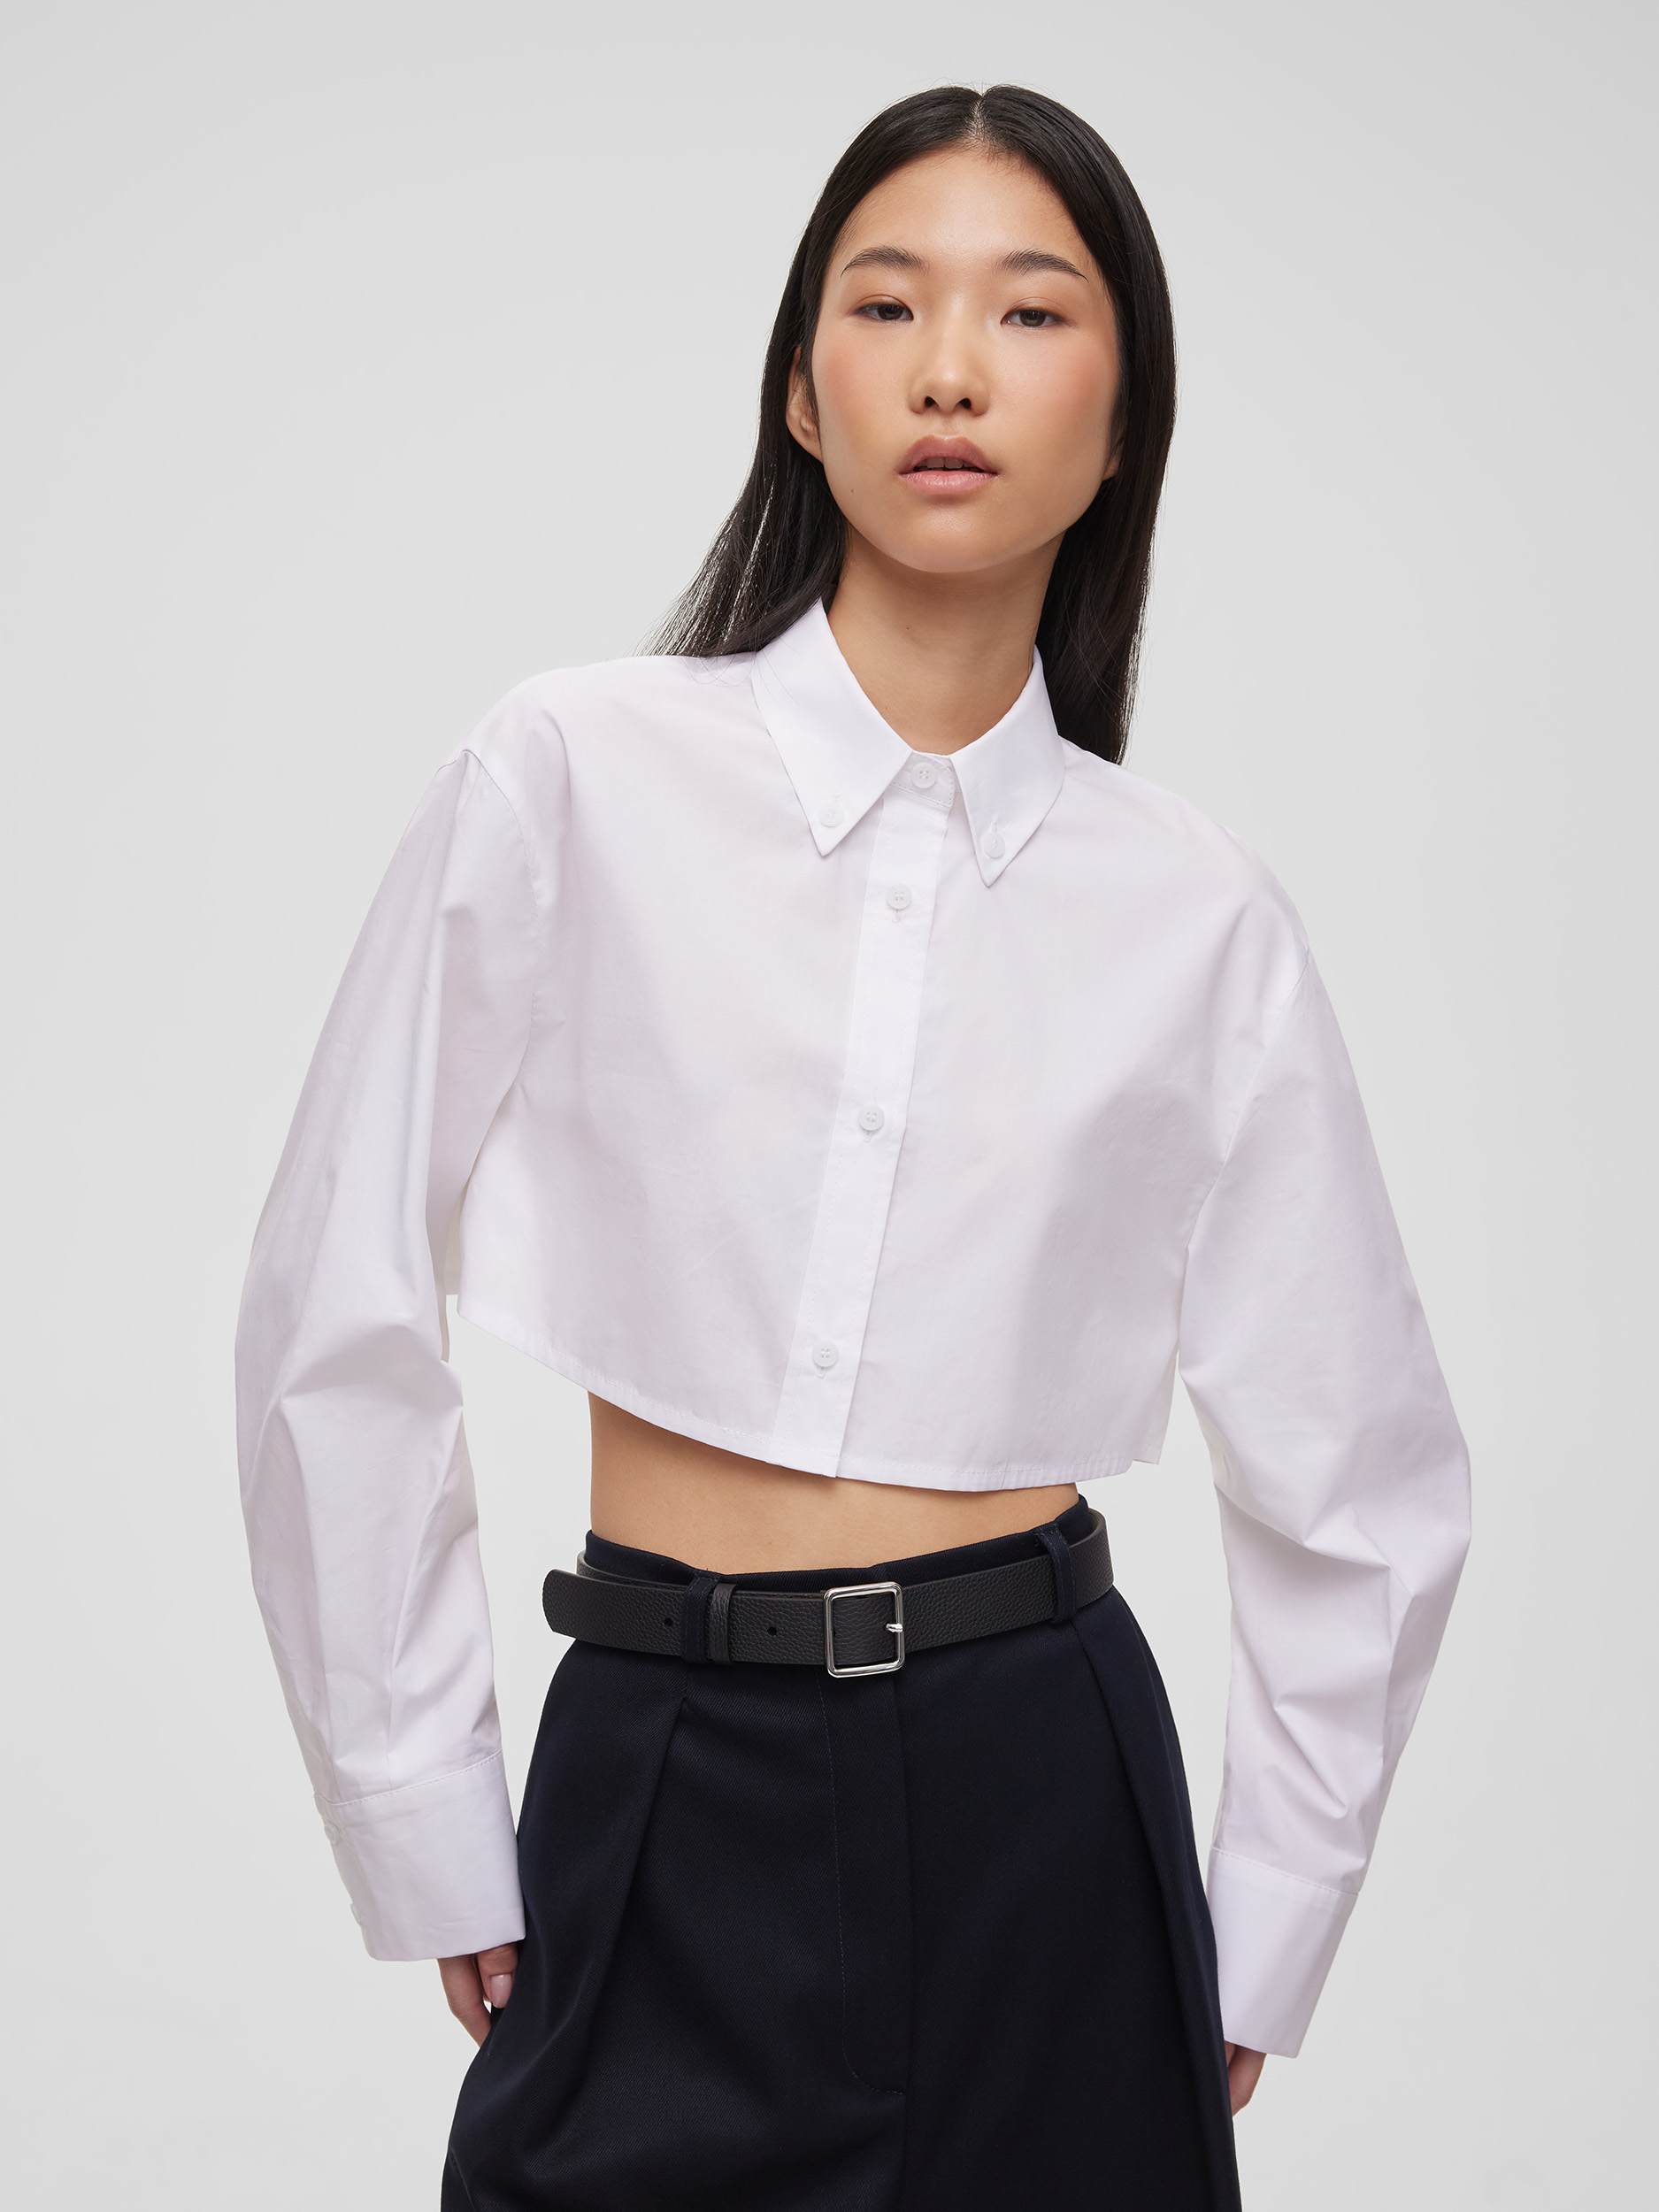 Рубашка женская короткая из хлопка, цвет – белый укороченная рубашка lulight белый m мл